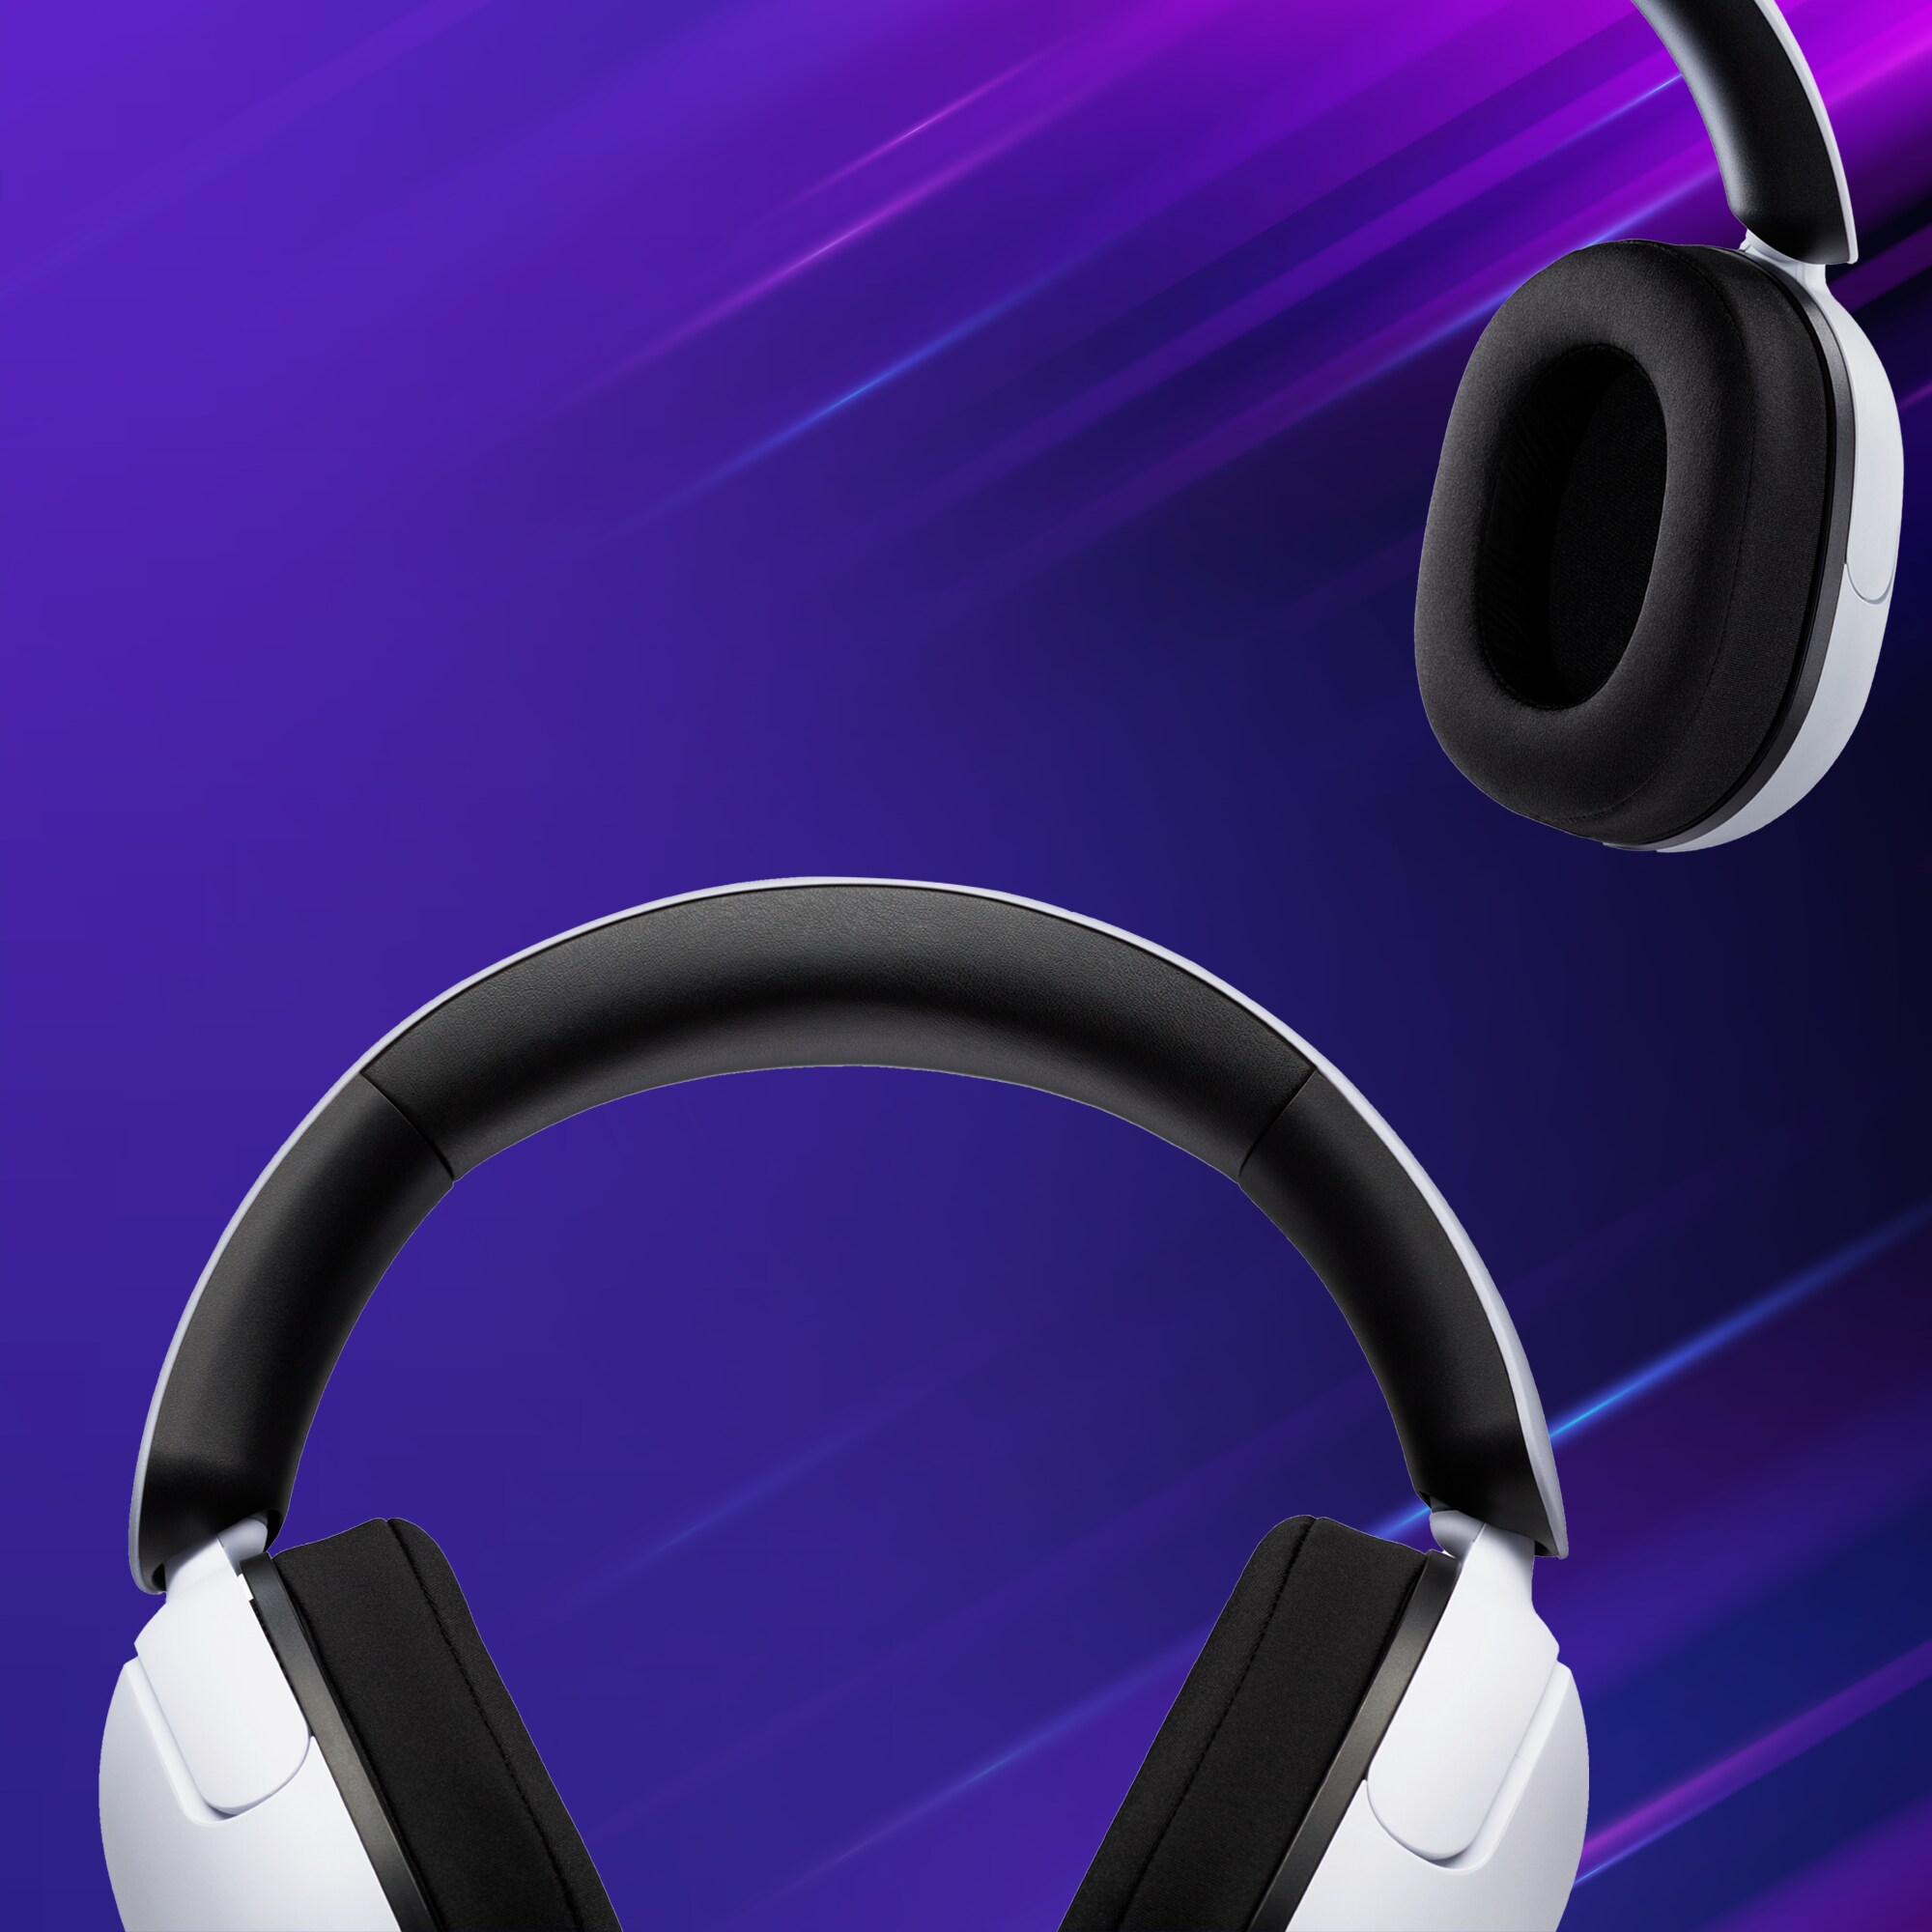 To sett med Sony Inzone gaming headset på en blå lilla bakgrunn